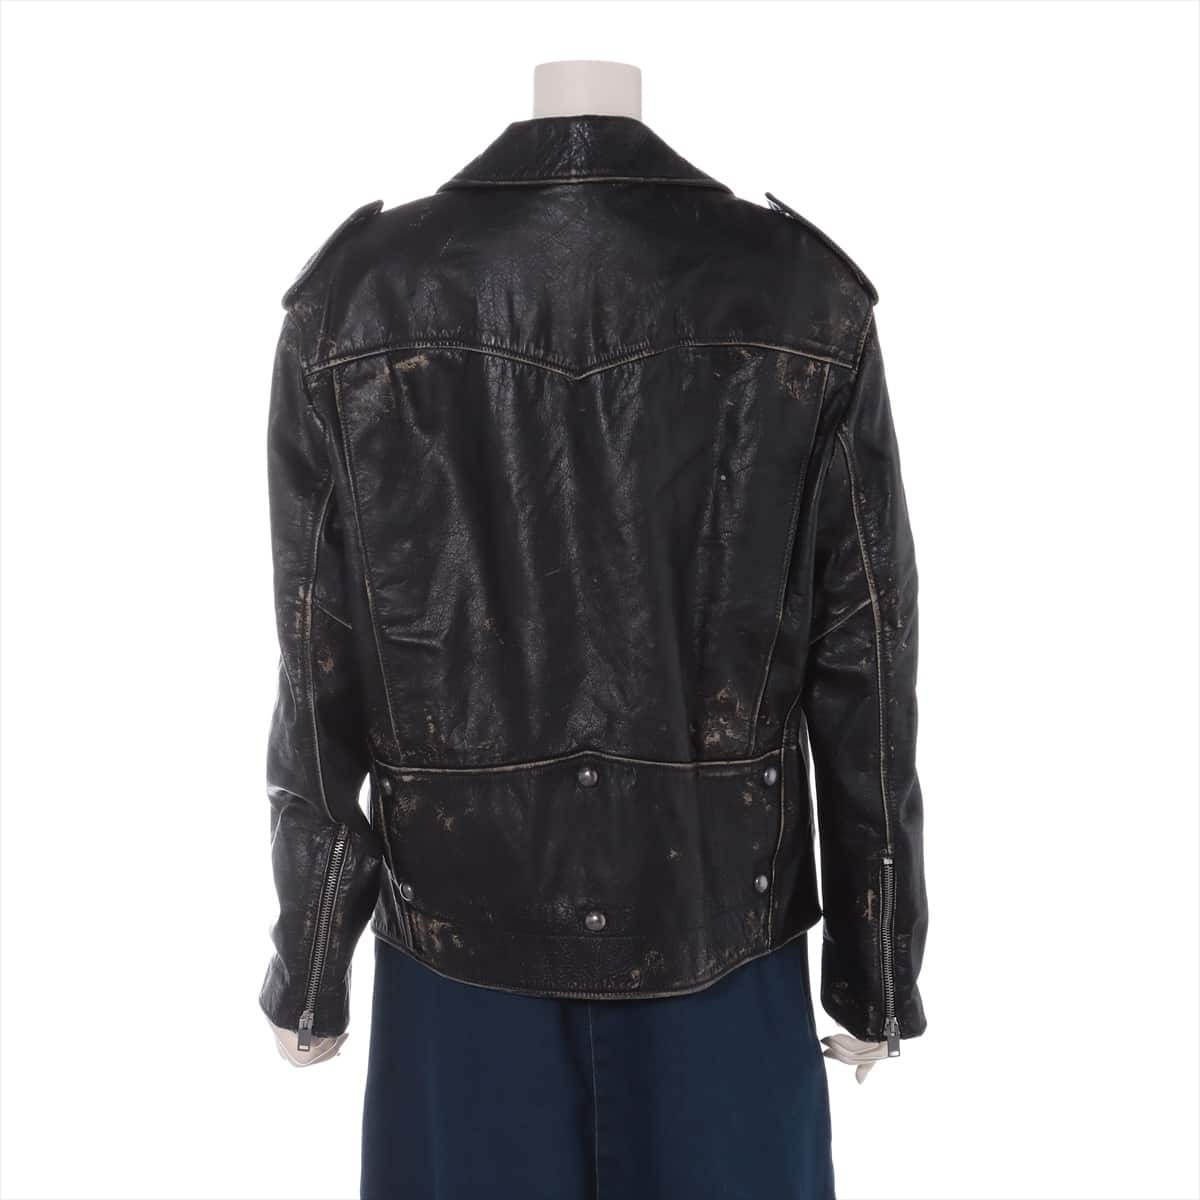 Saint Laurent Paris Leather Leather jacket Unknown size Ladies' Black No sign tag Vintage processing